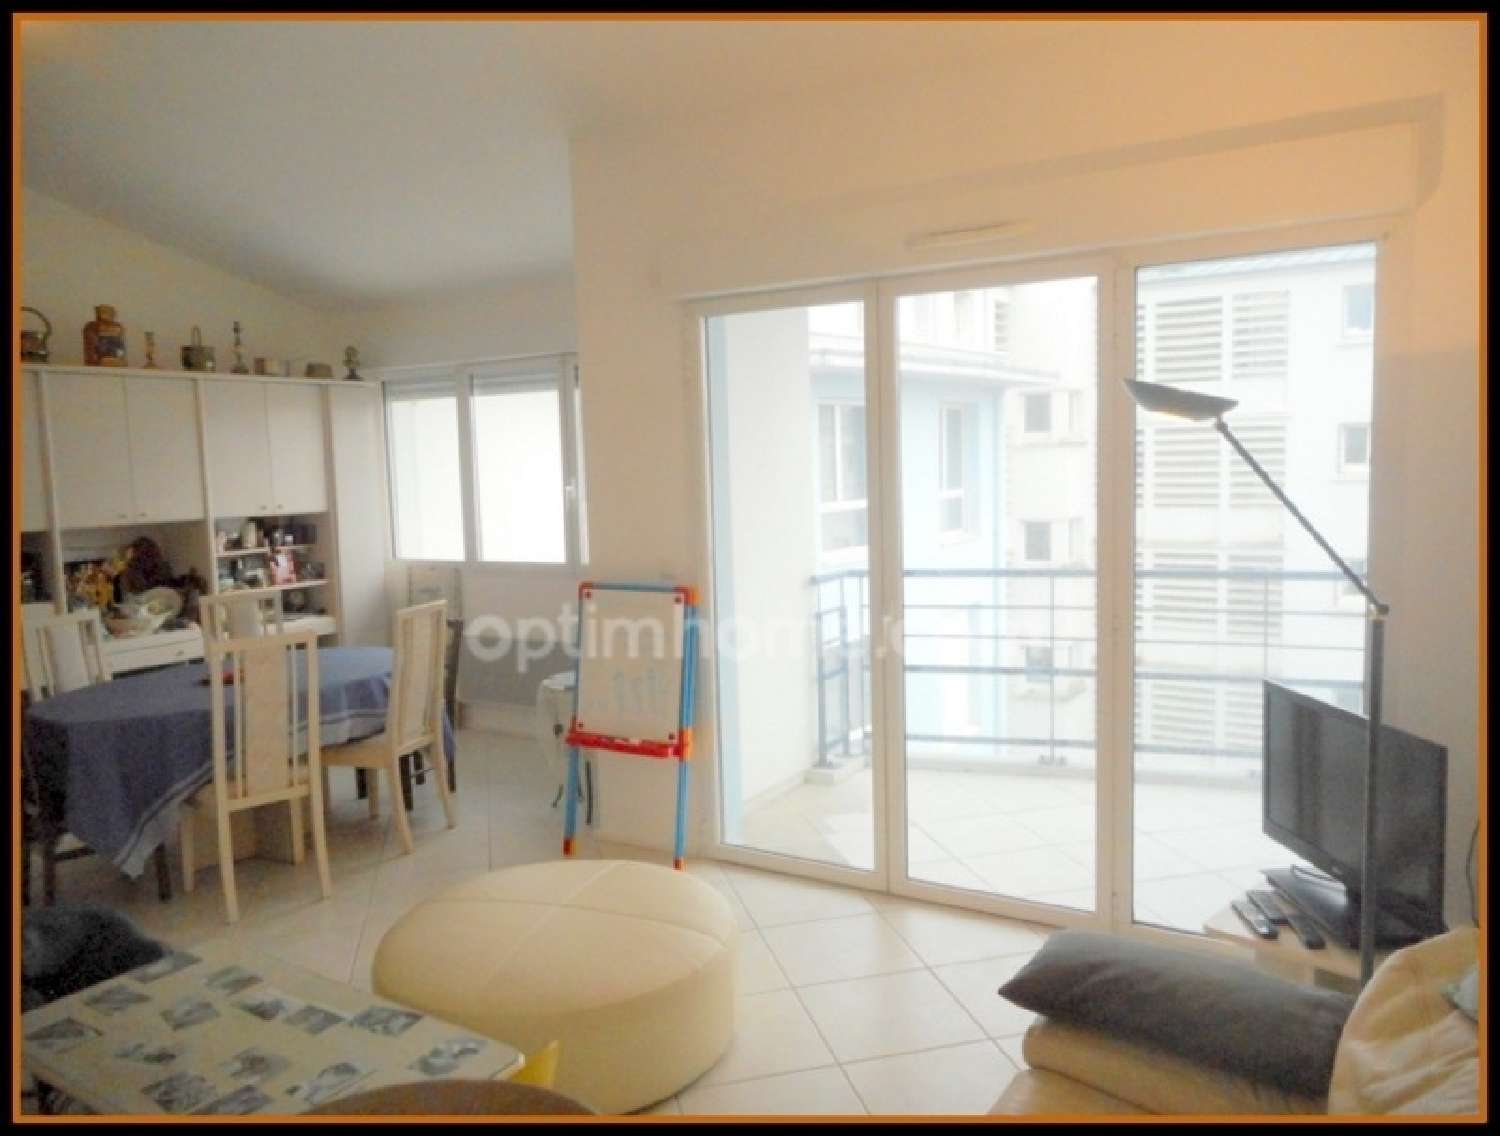  for sale apartment Brest Finistère 7